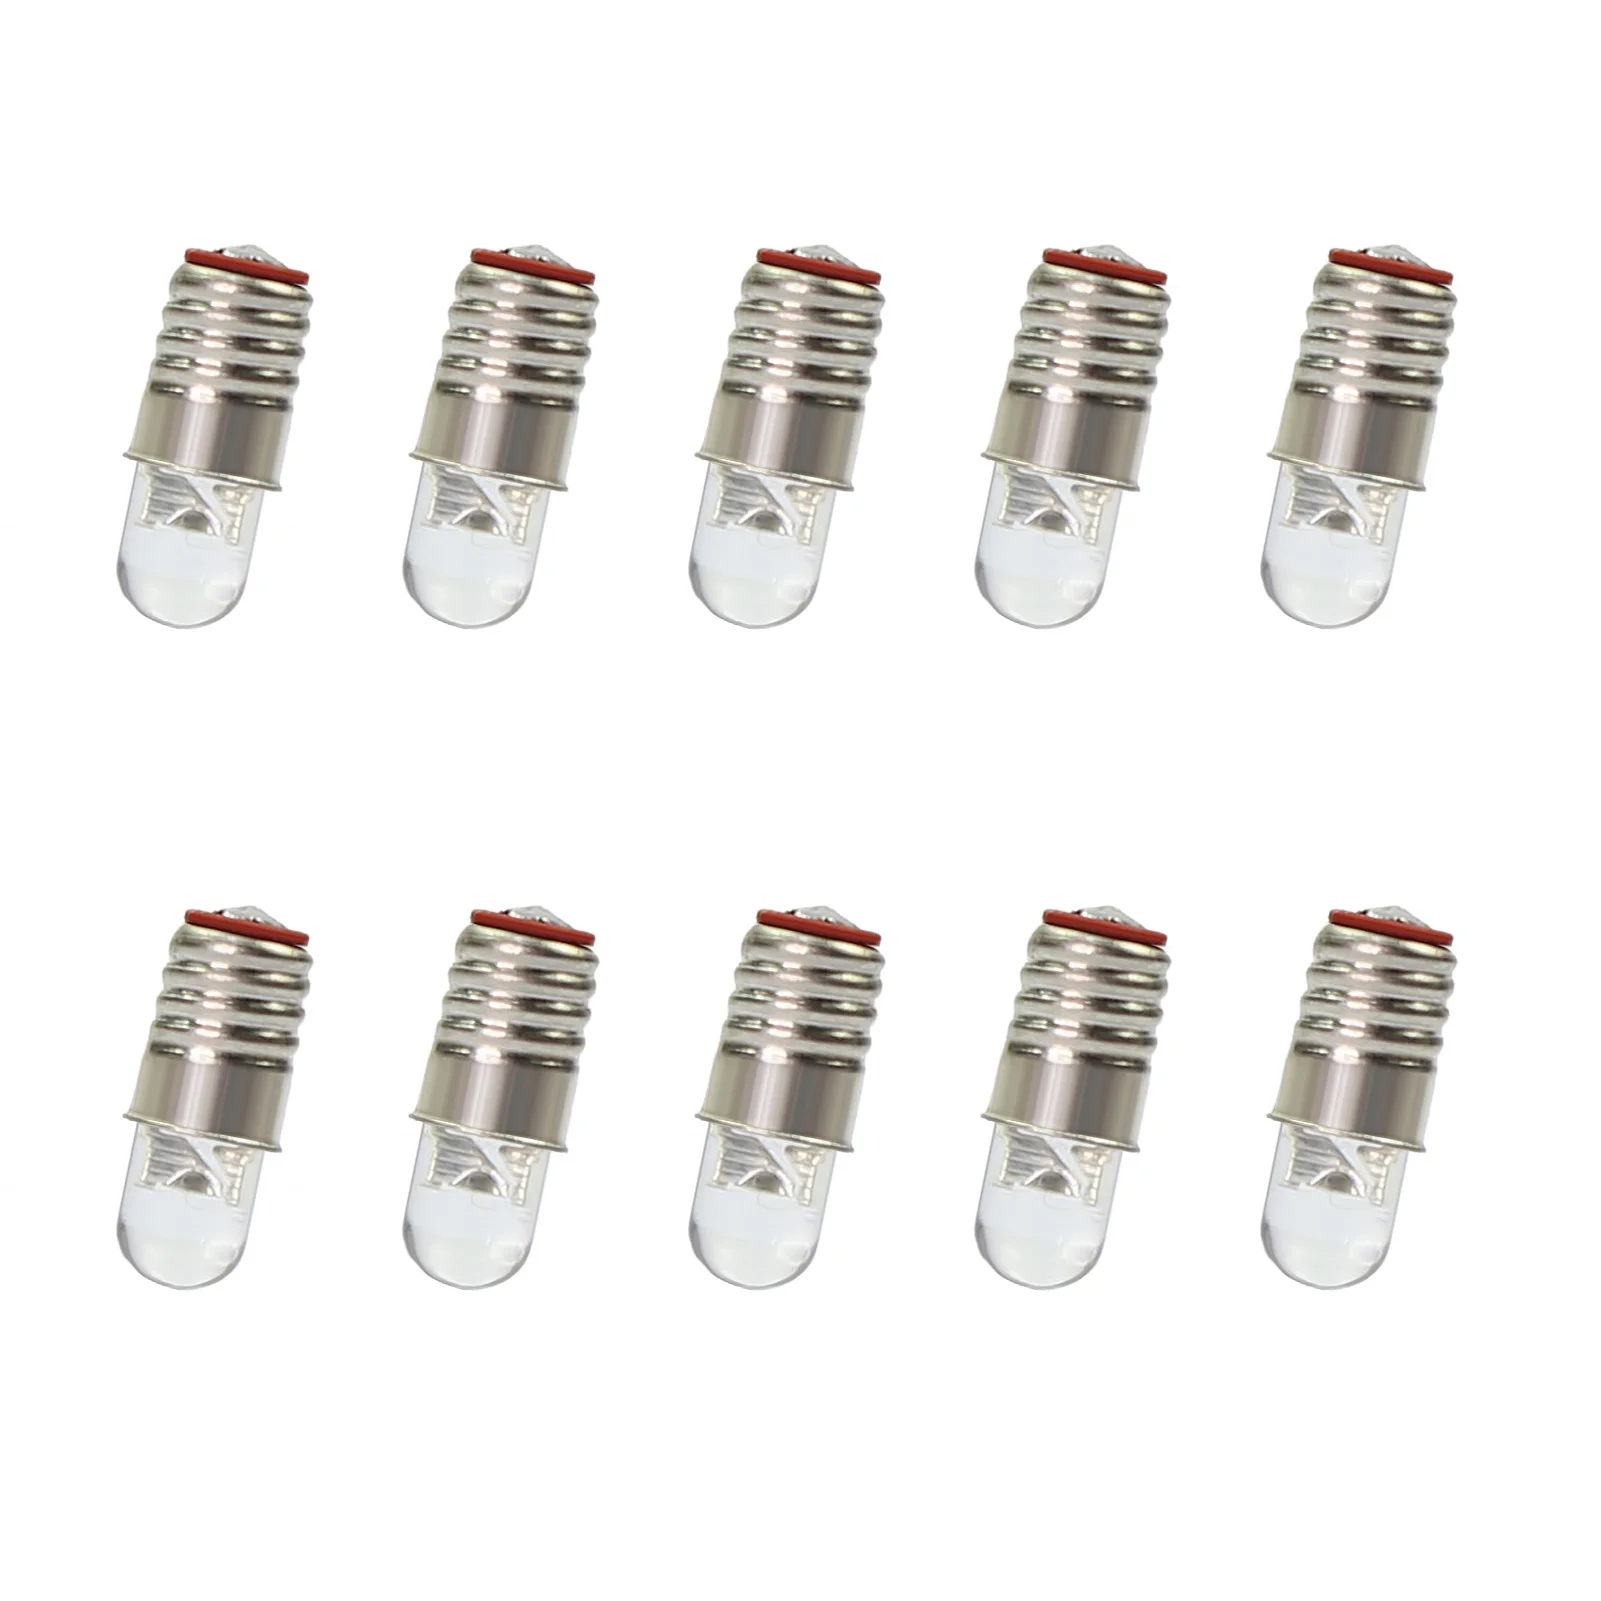 10pcs Warm White / Bright White LEDs Screw Bulbs E5 E5.5 12V HO/TT